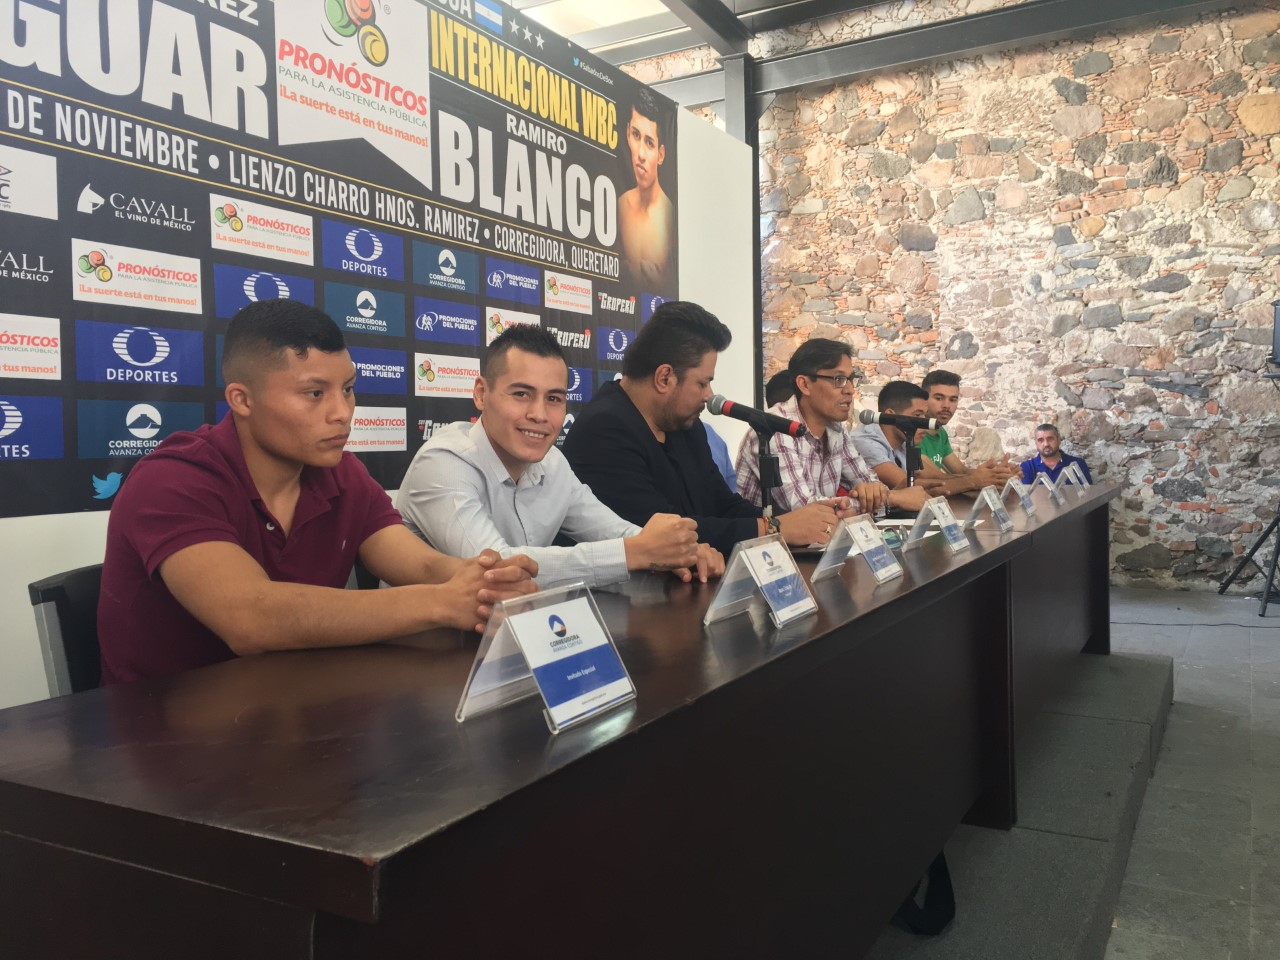  Boxeadores “Jaguar” y Ramiro Blanco están listos para pelear en Corregidora